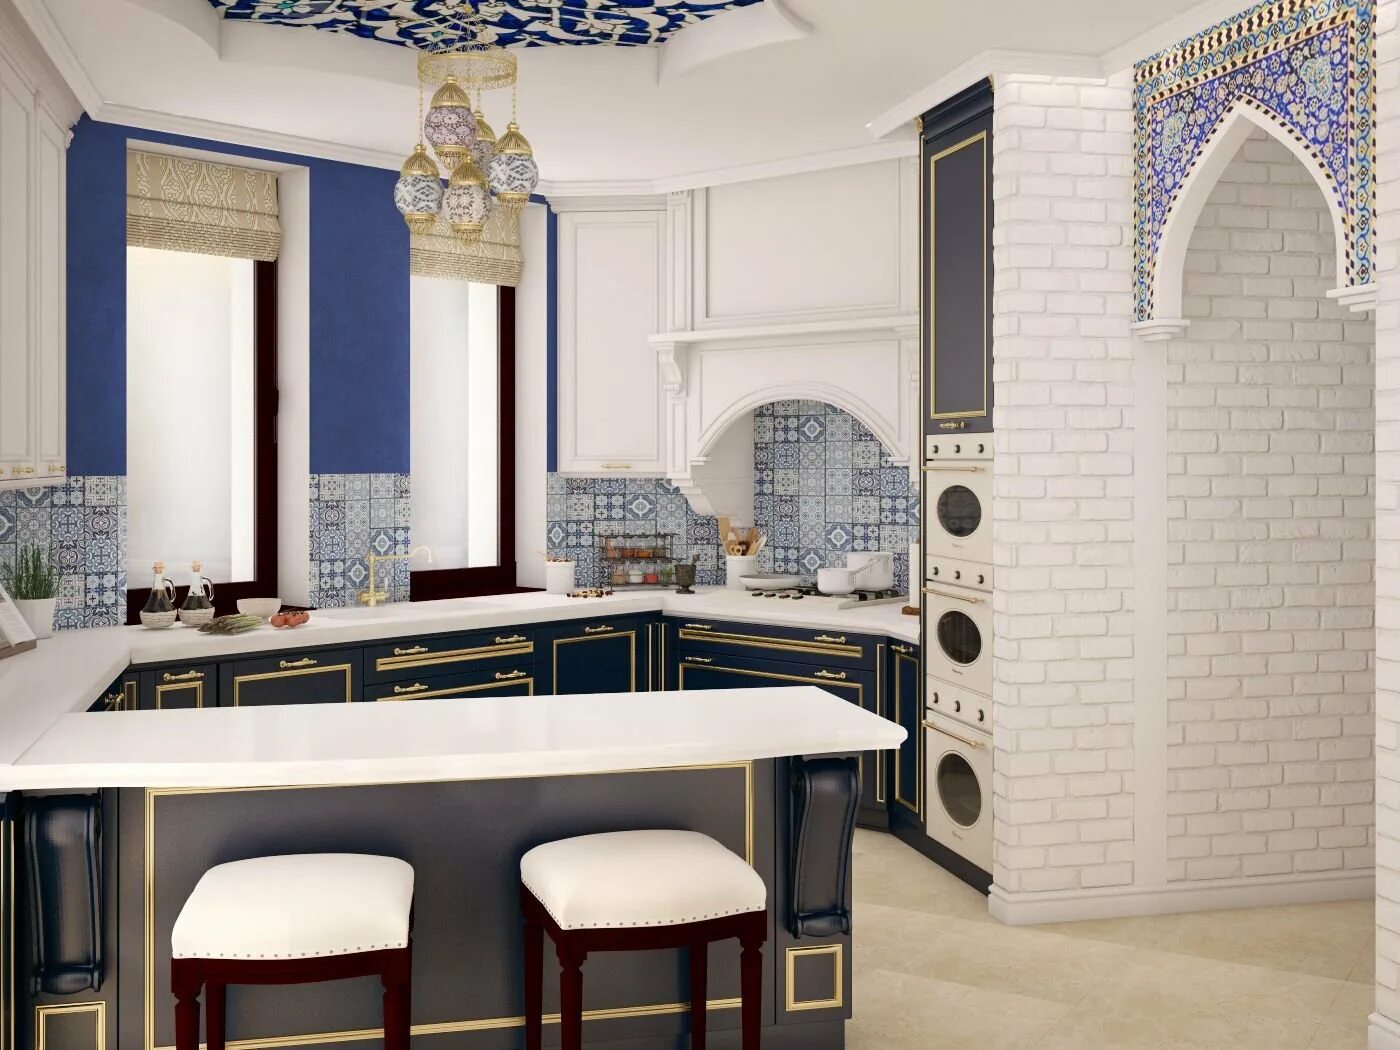 Кухня в стиле Марракеш. Стиль Марокко кухни марокканский стиль. Кухонный гарнитур в Восточном стиле Марокко. Кухня в стиле Марокко. Этническая кухня